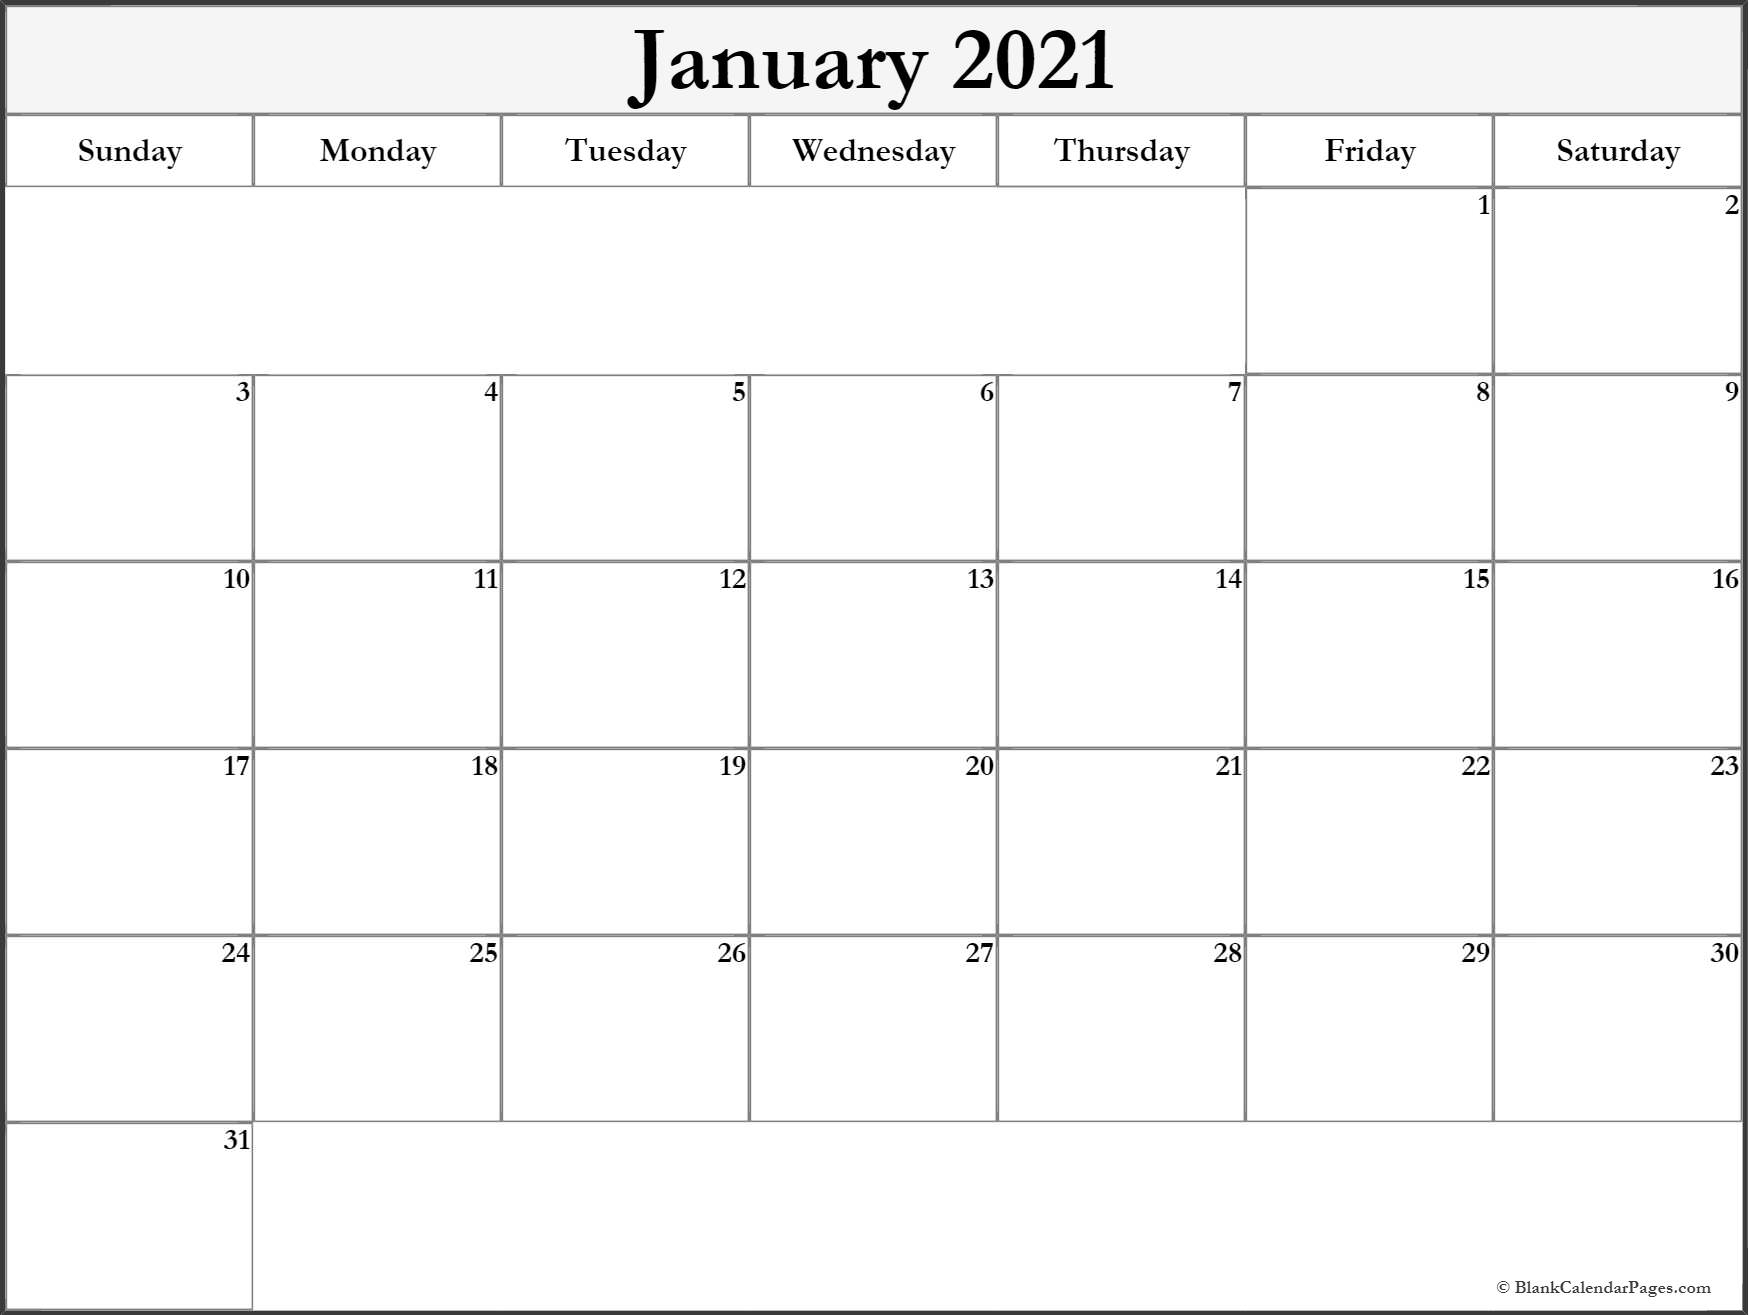 January 2021 Blank Calendar Templates.